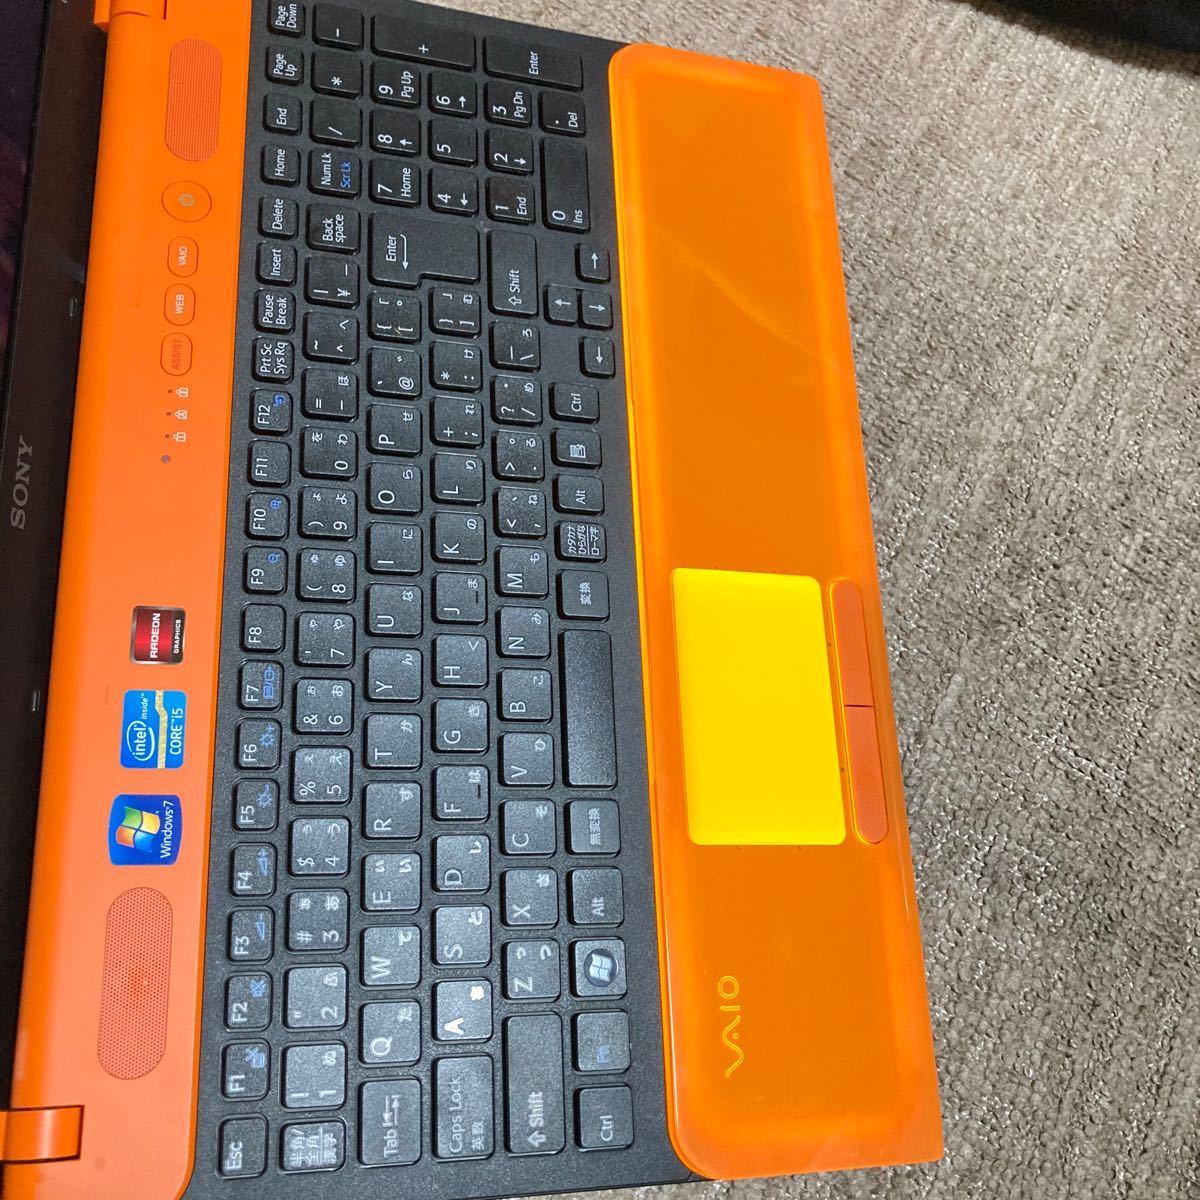 SONY VAIO めちゃ可愛ノートパソコン オレンジ色 Windows10 Core i5 Office